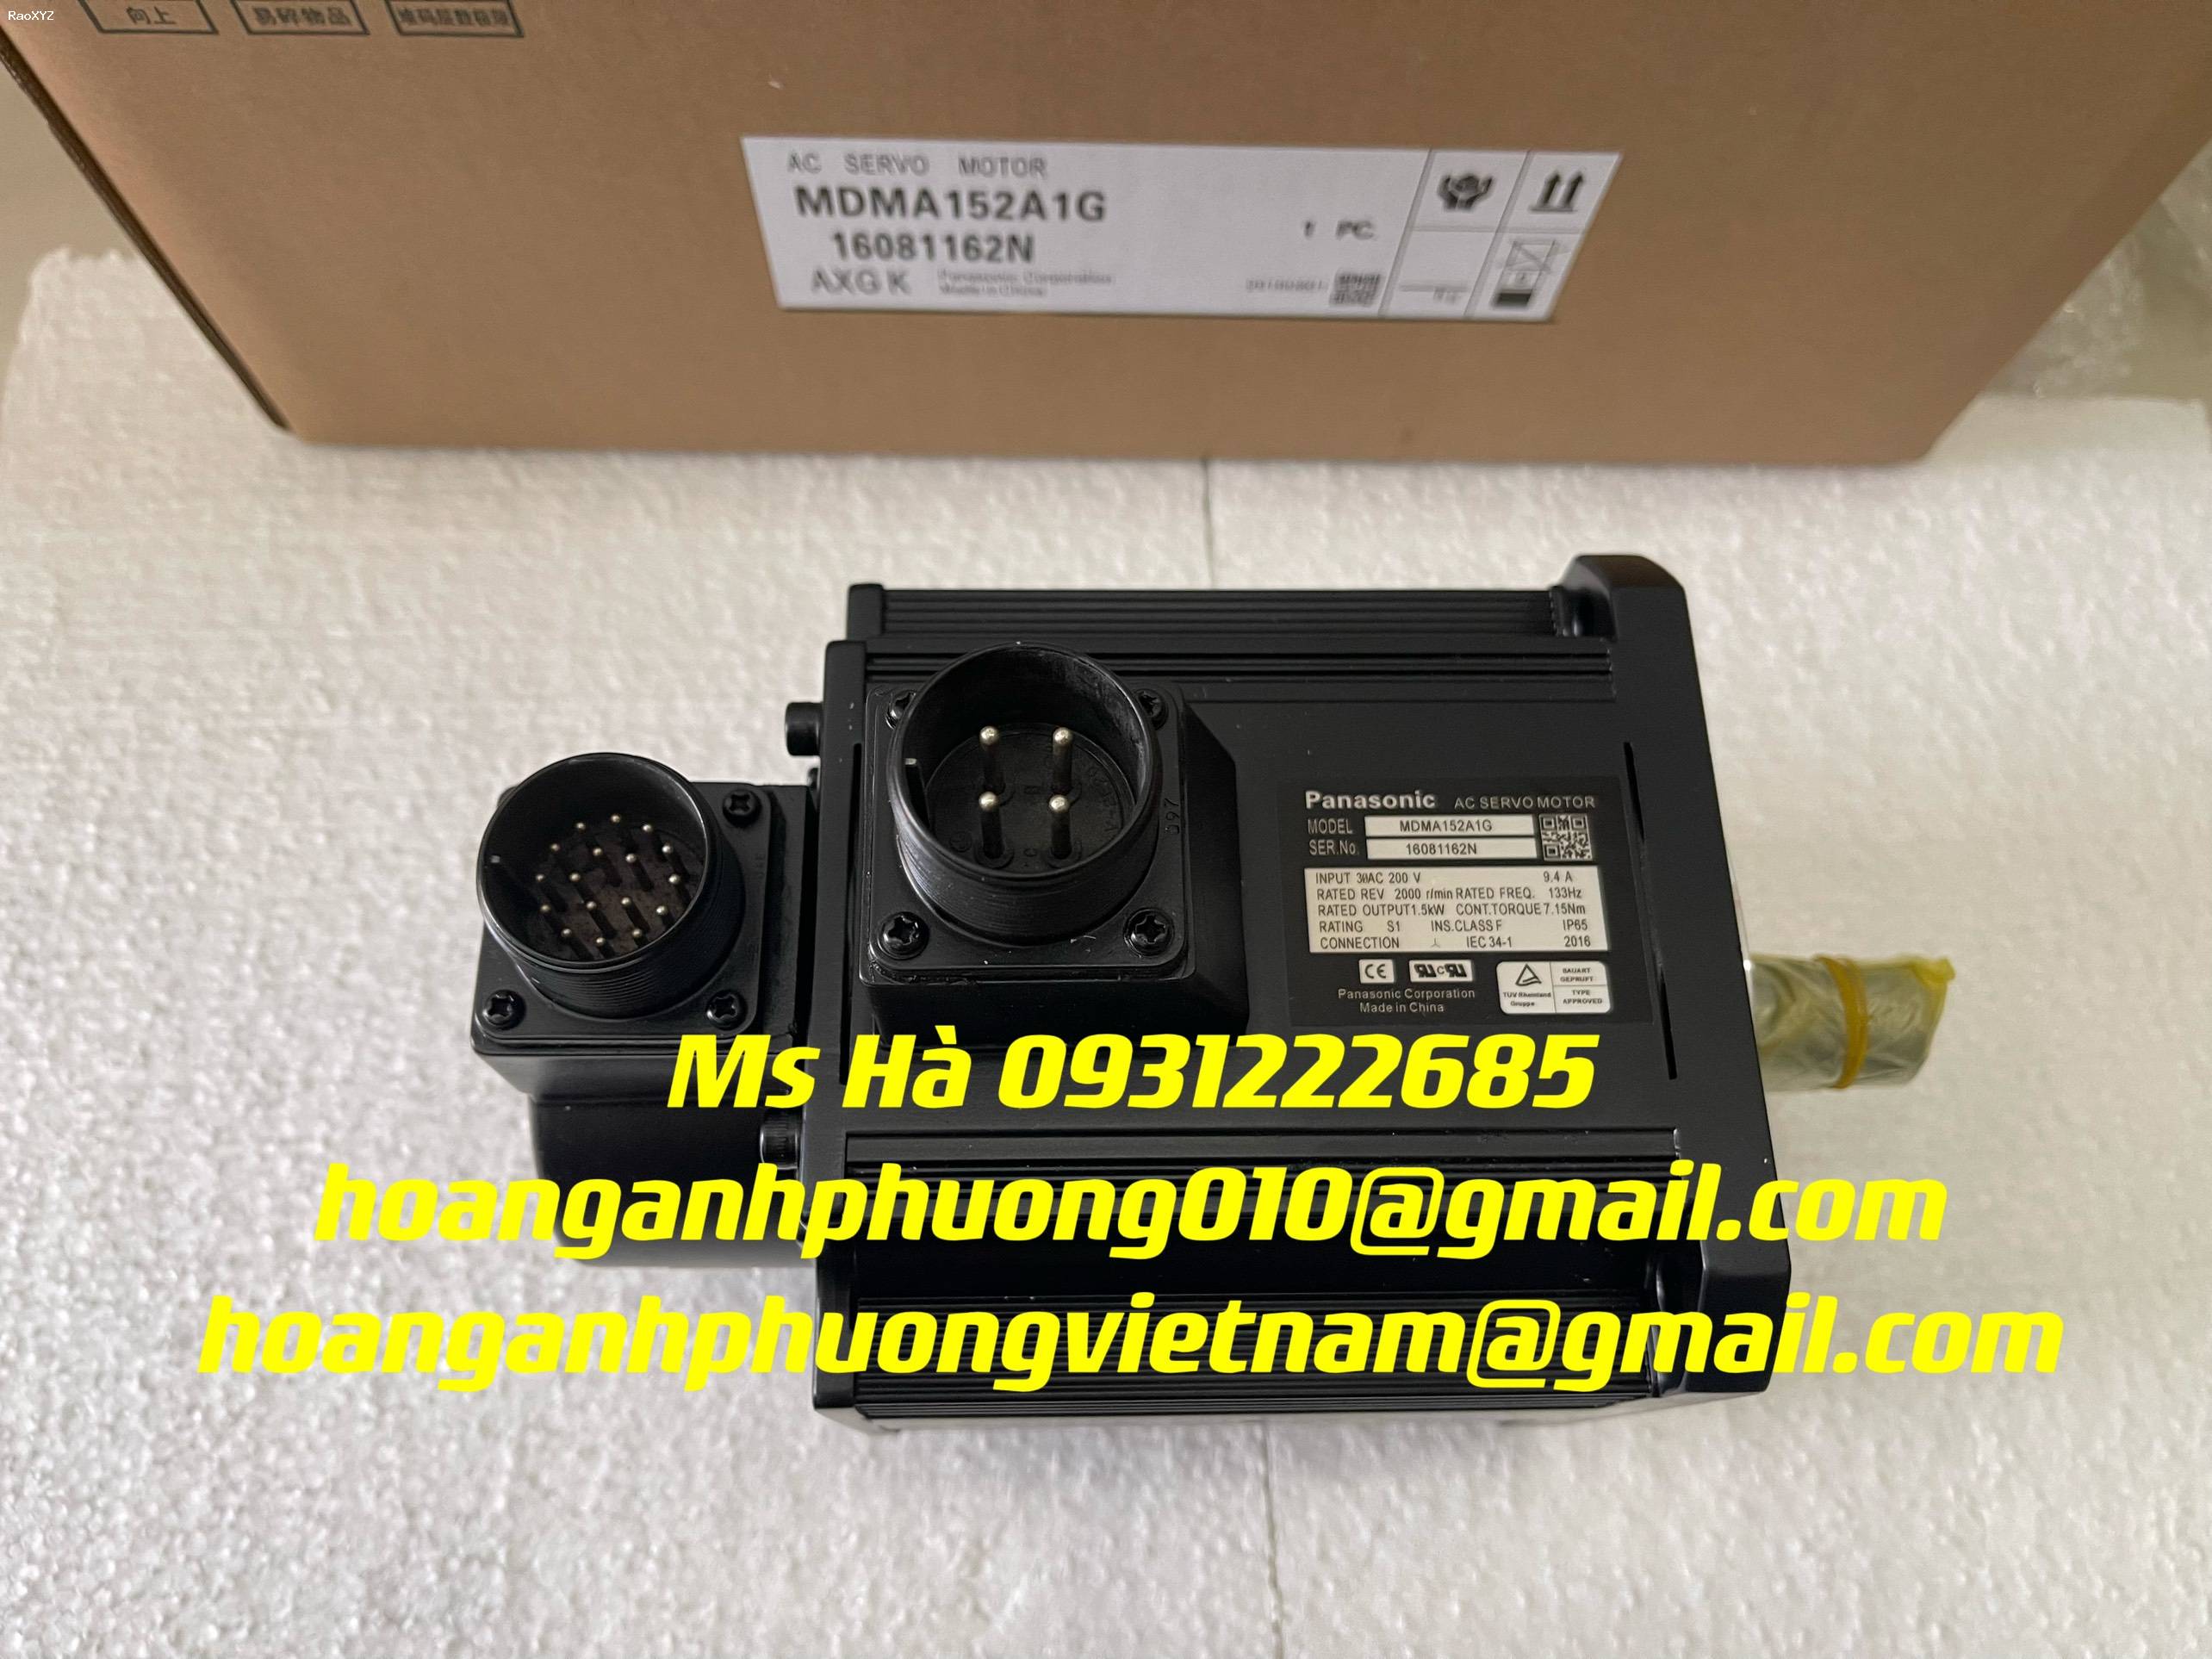 Panasonic MDMA152A1G | servo | bảo hành toàn quốc